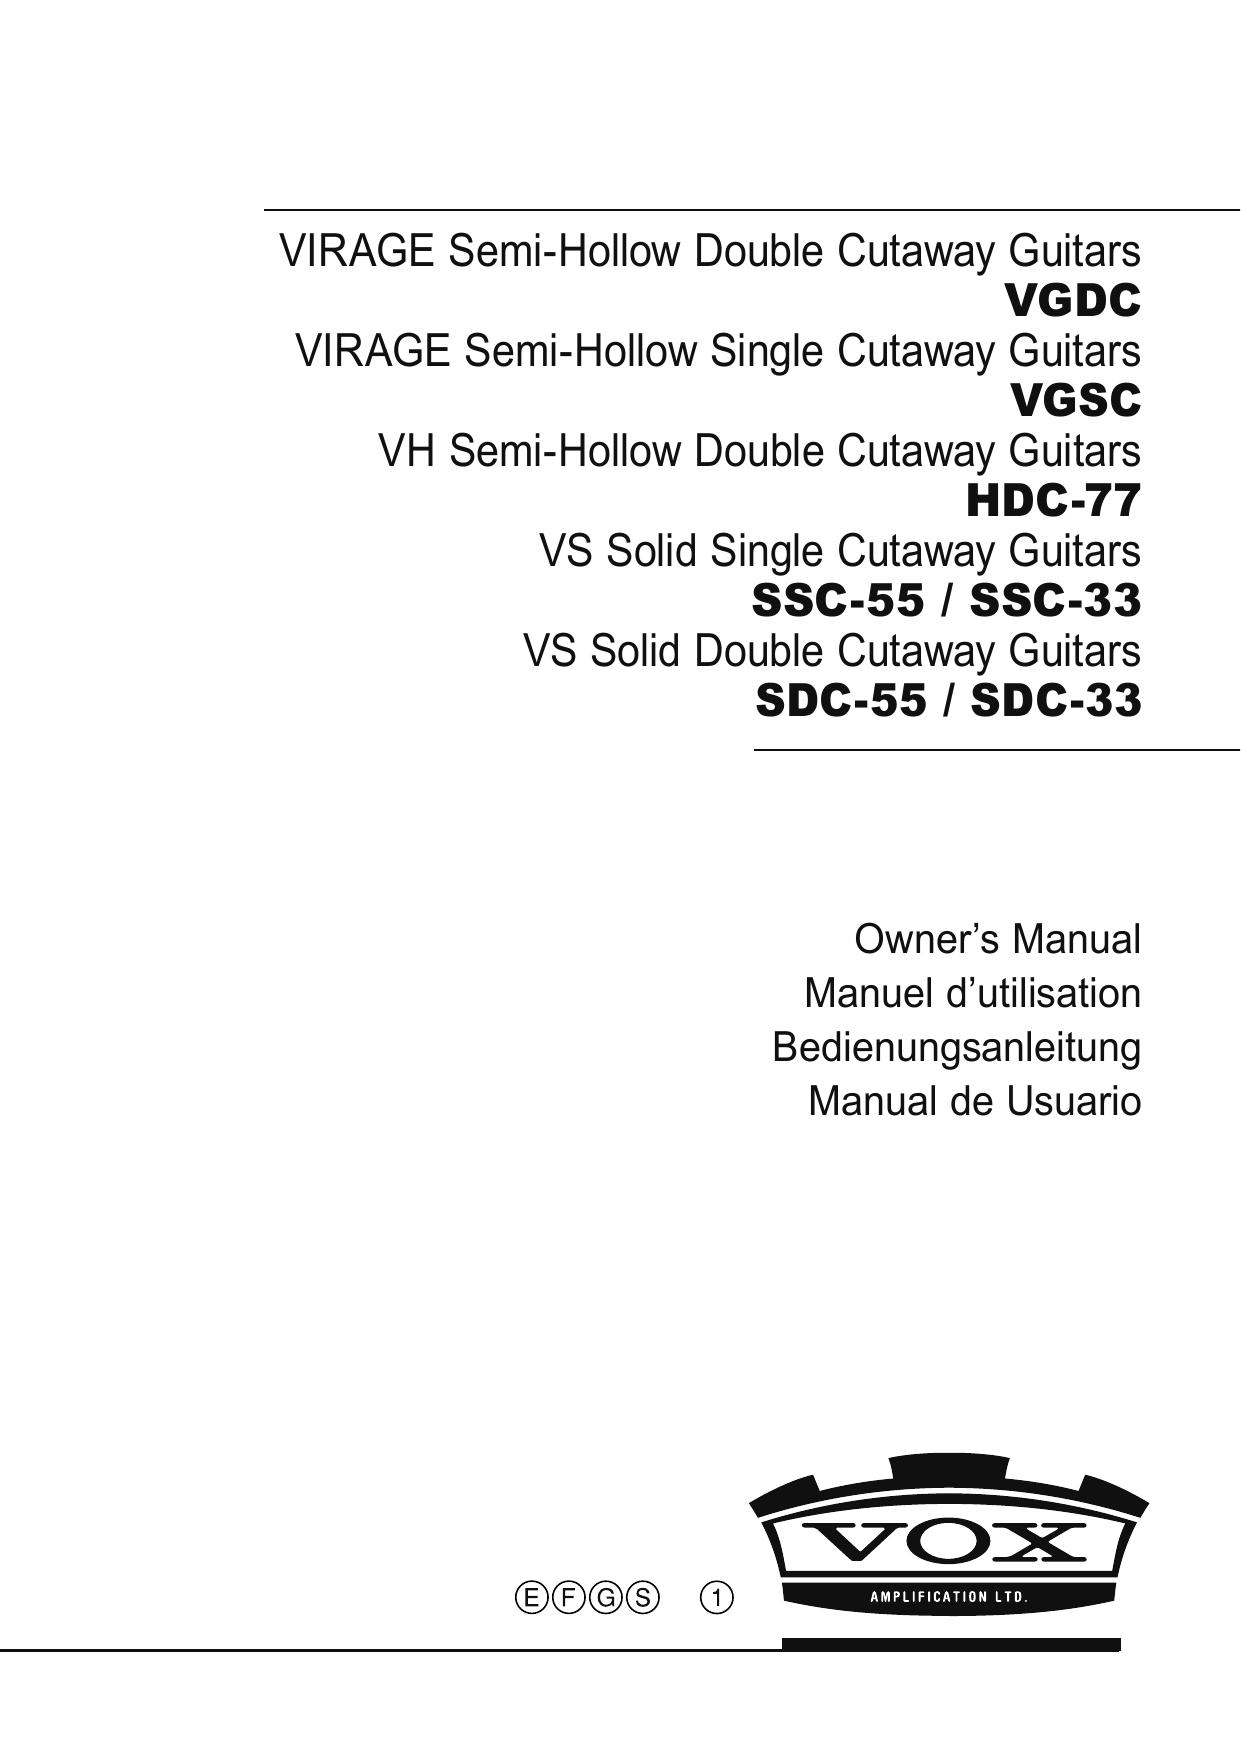 Vox VGDC Guitar User Manual